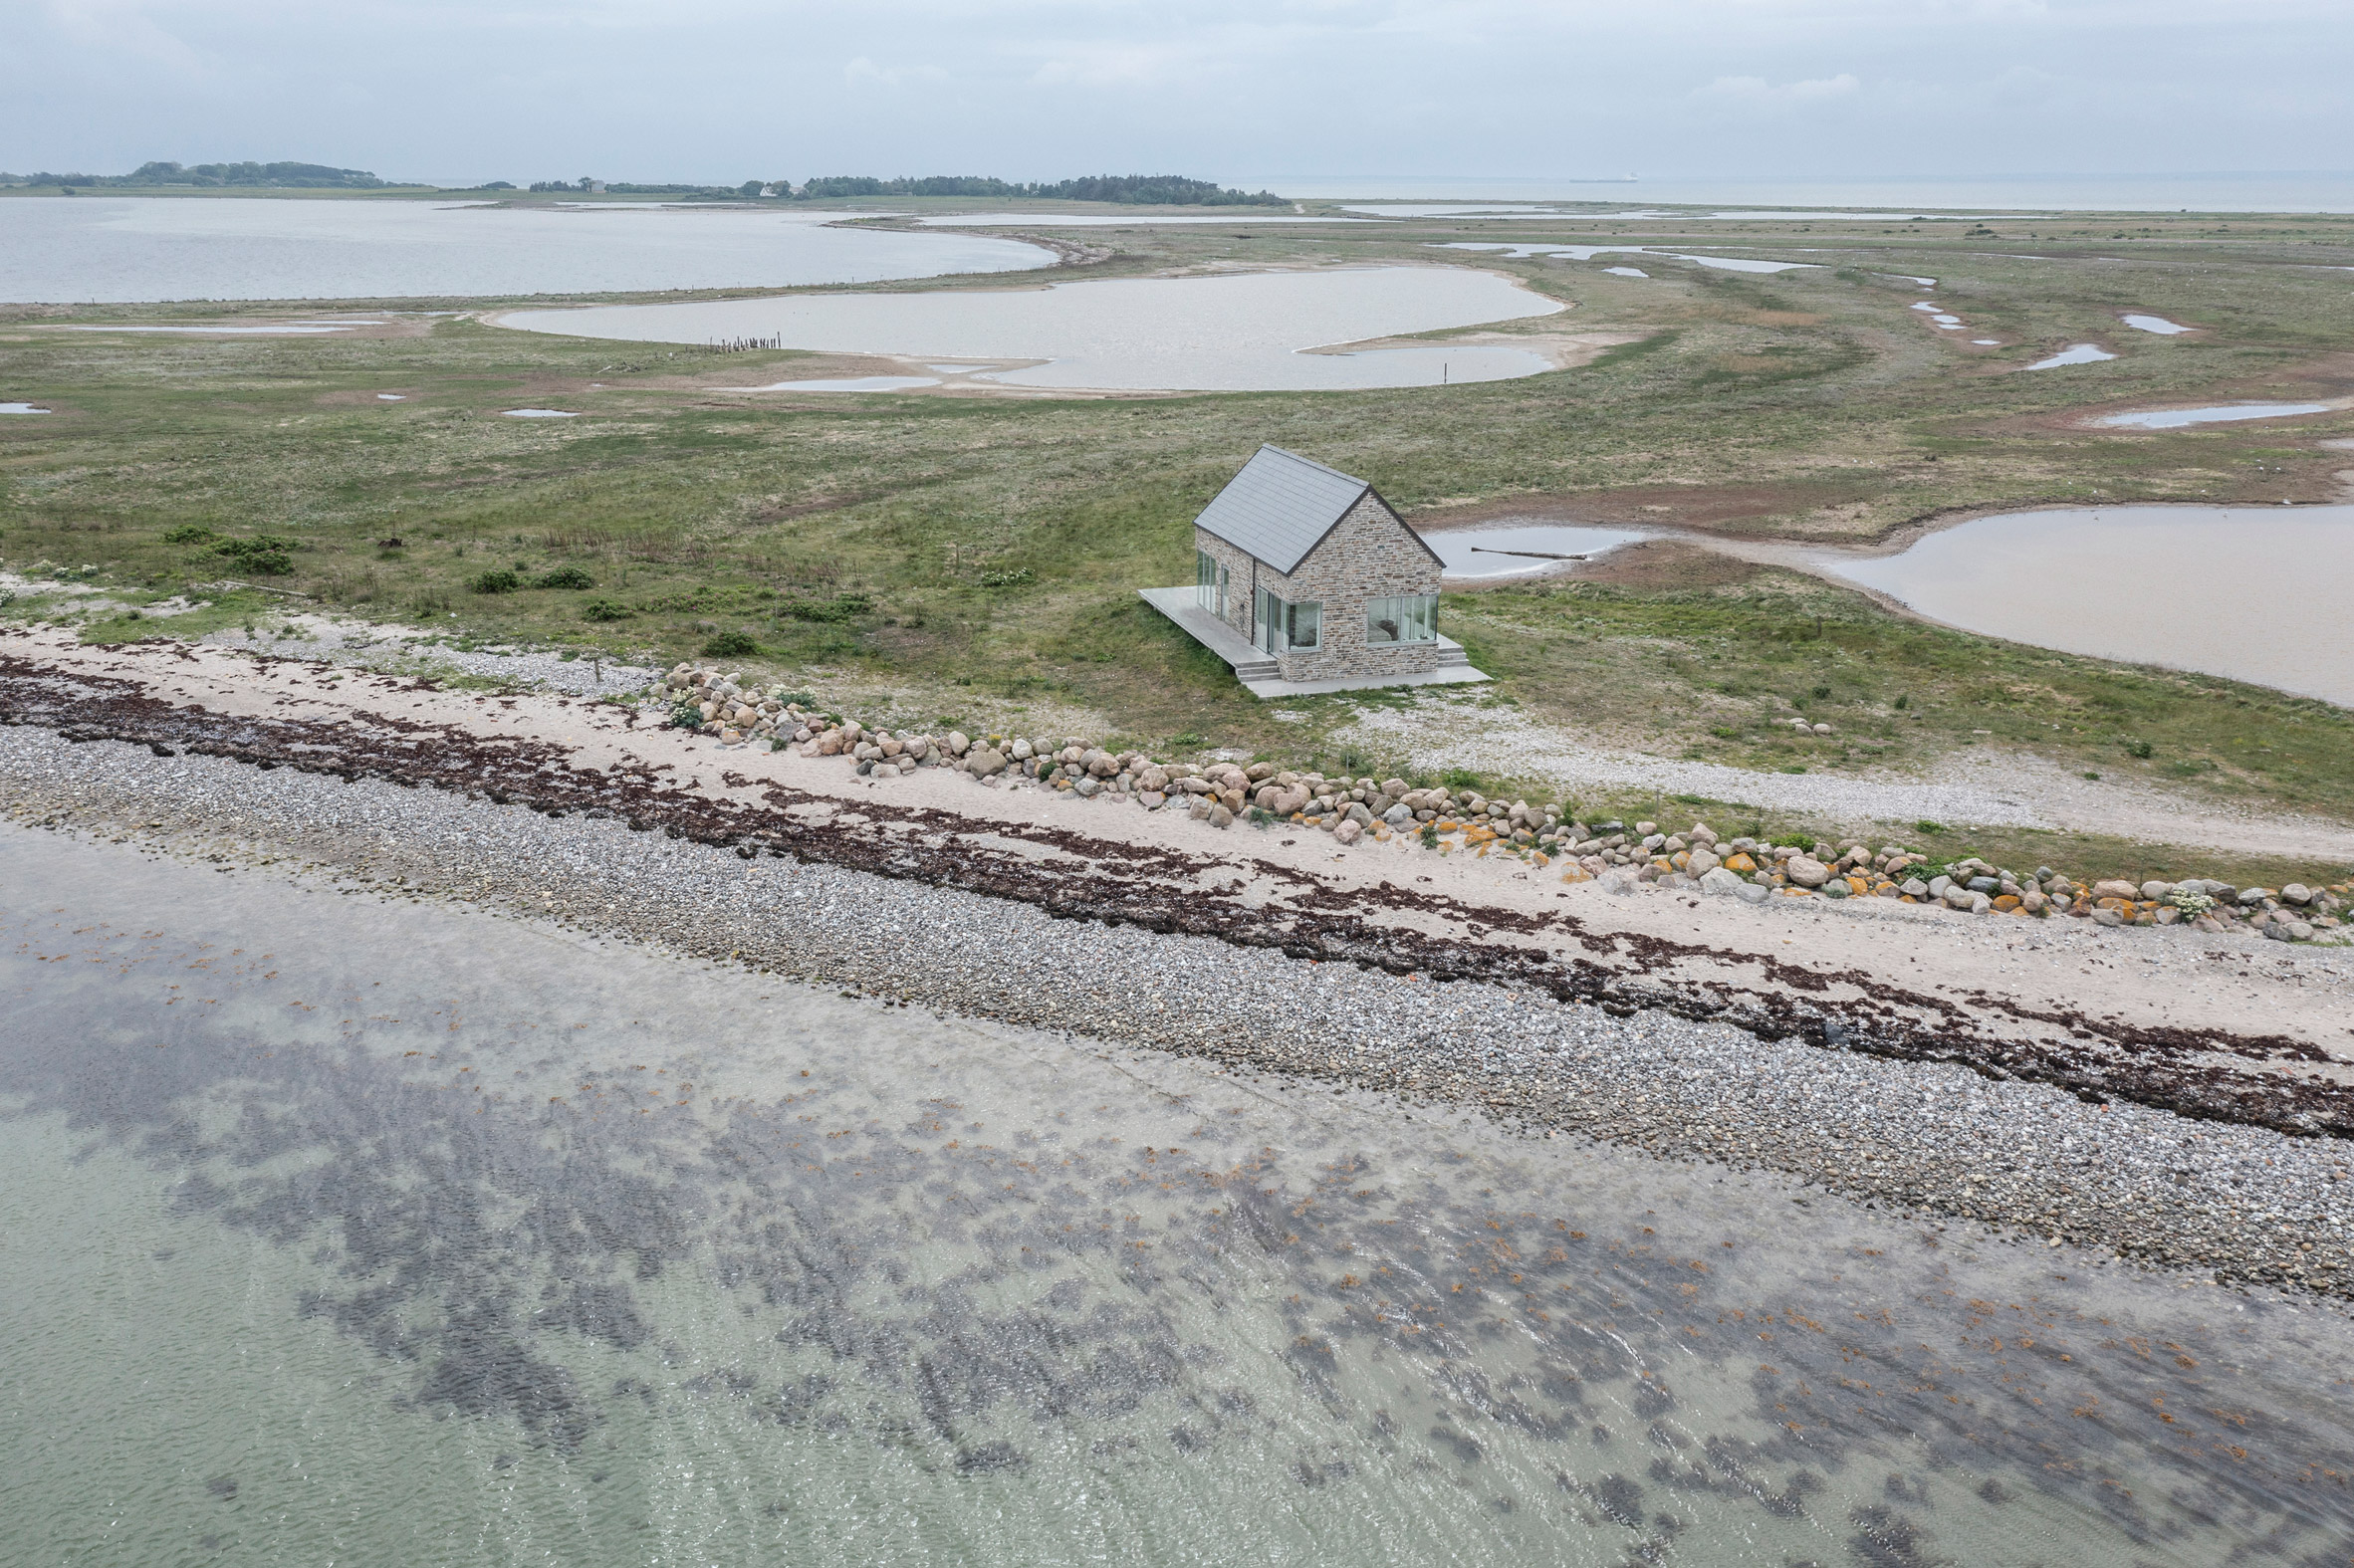 Summerhouse on Danish coast